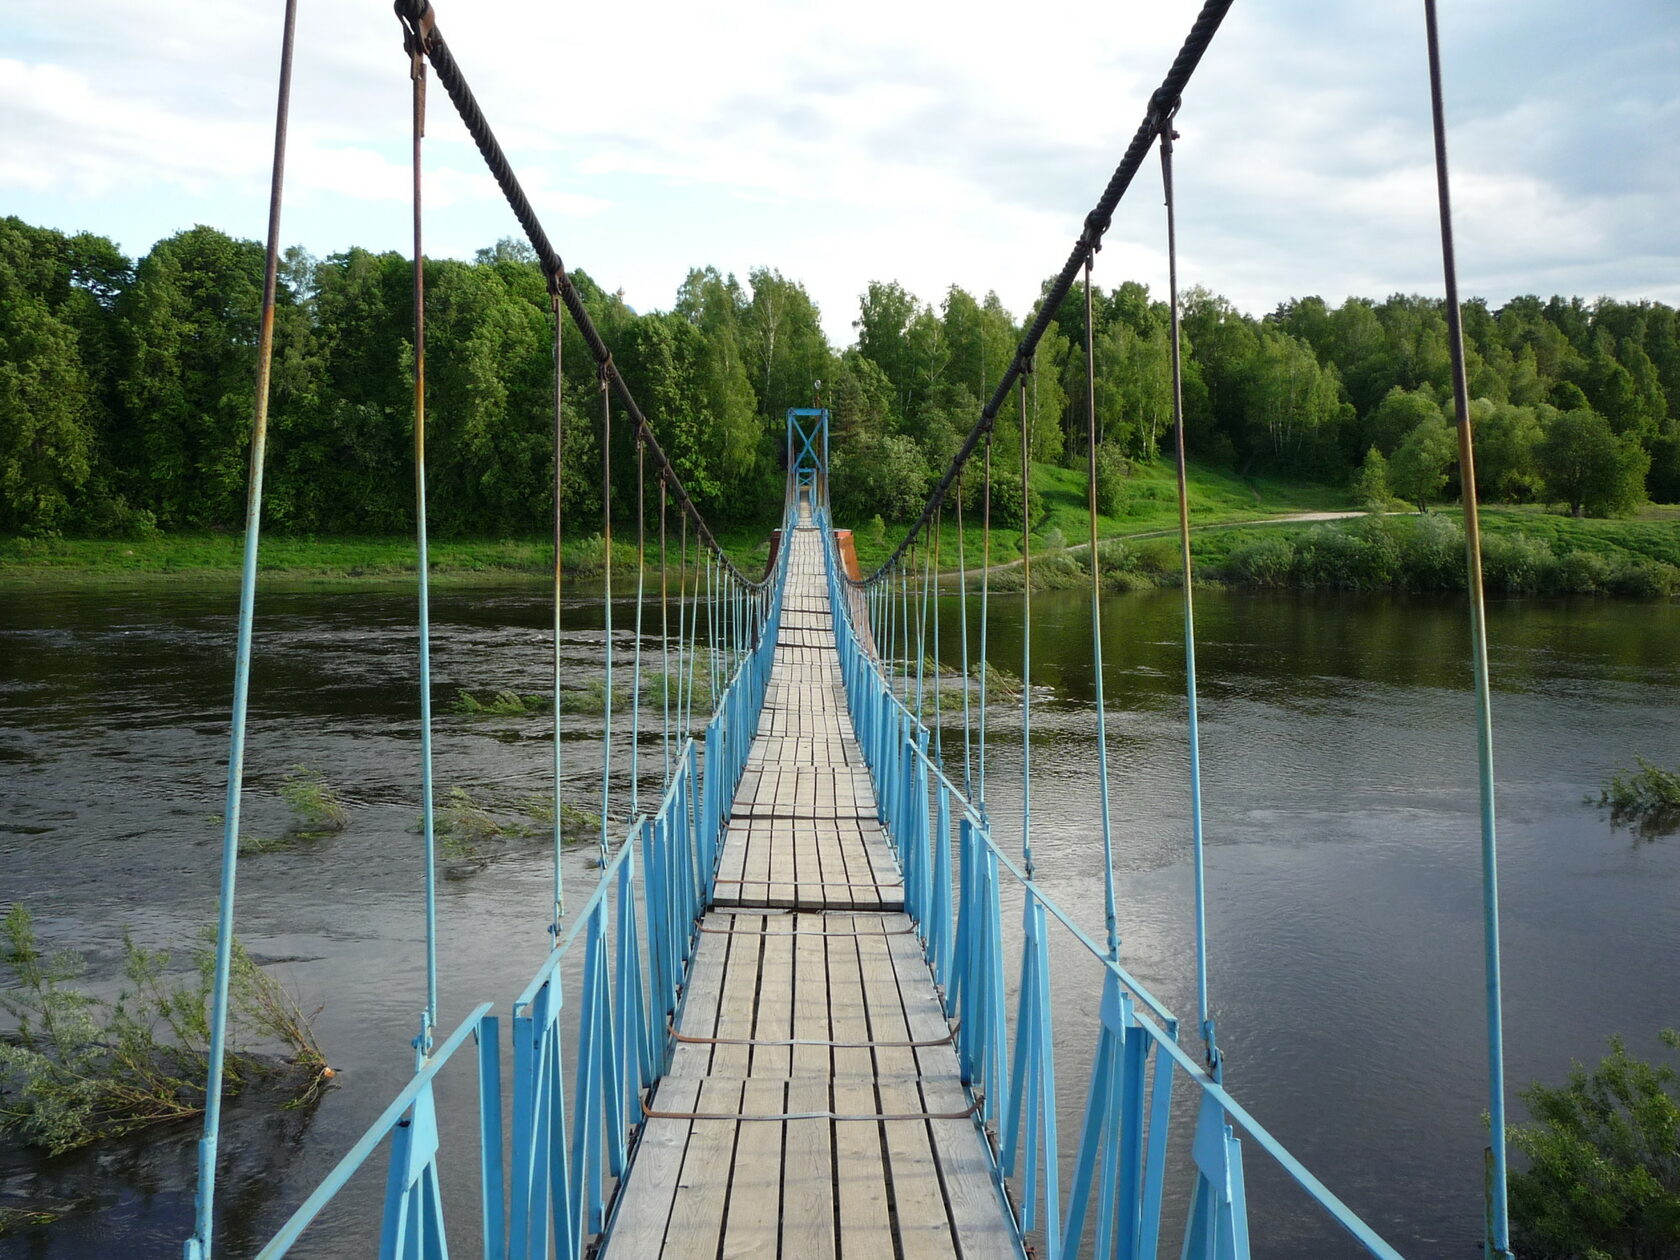 мост через реку угра